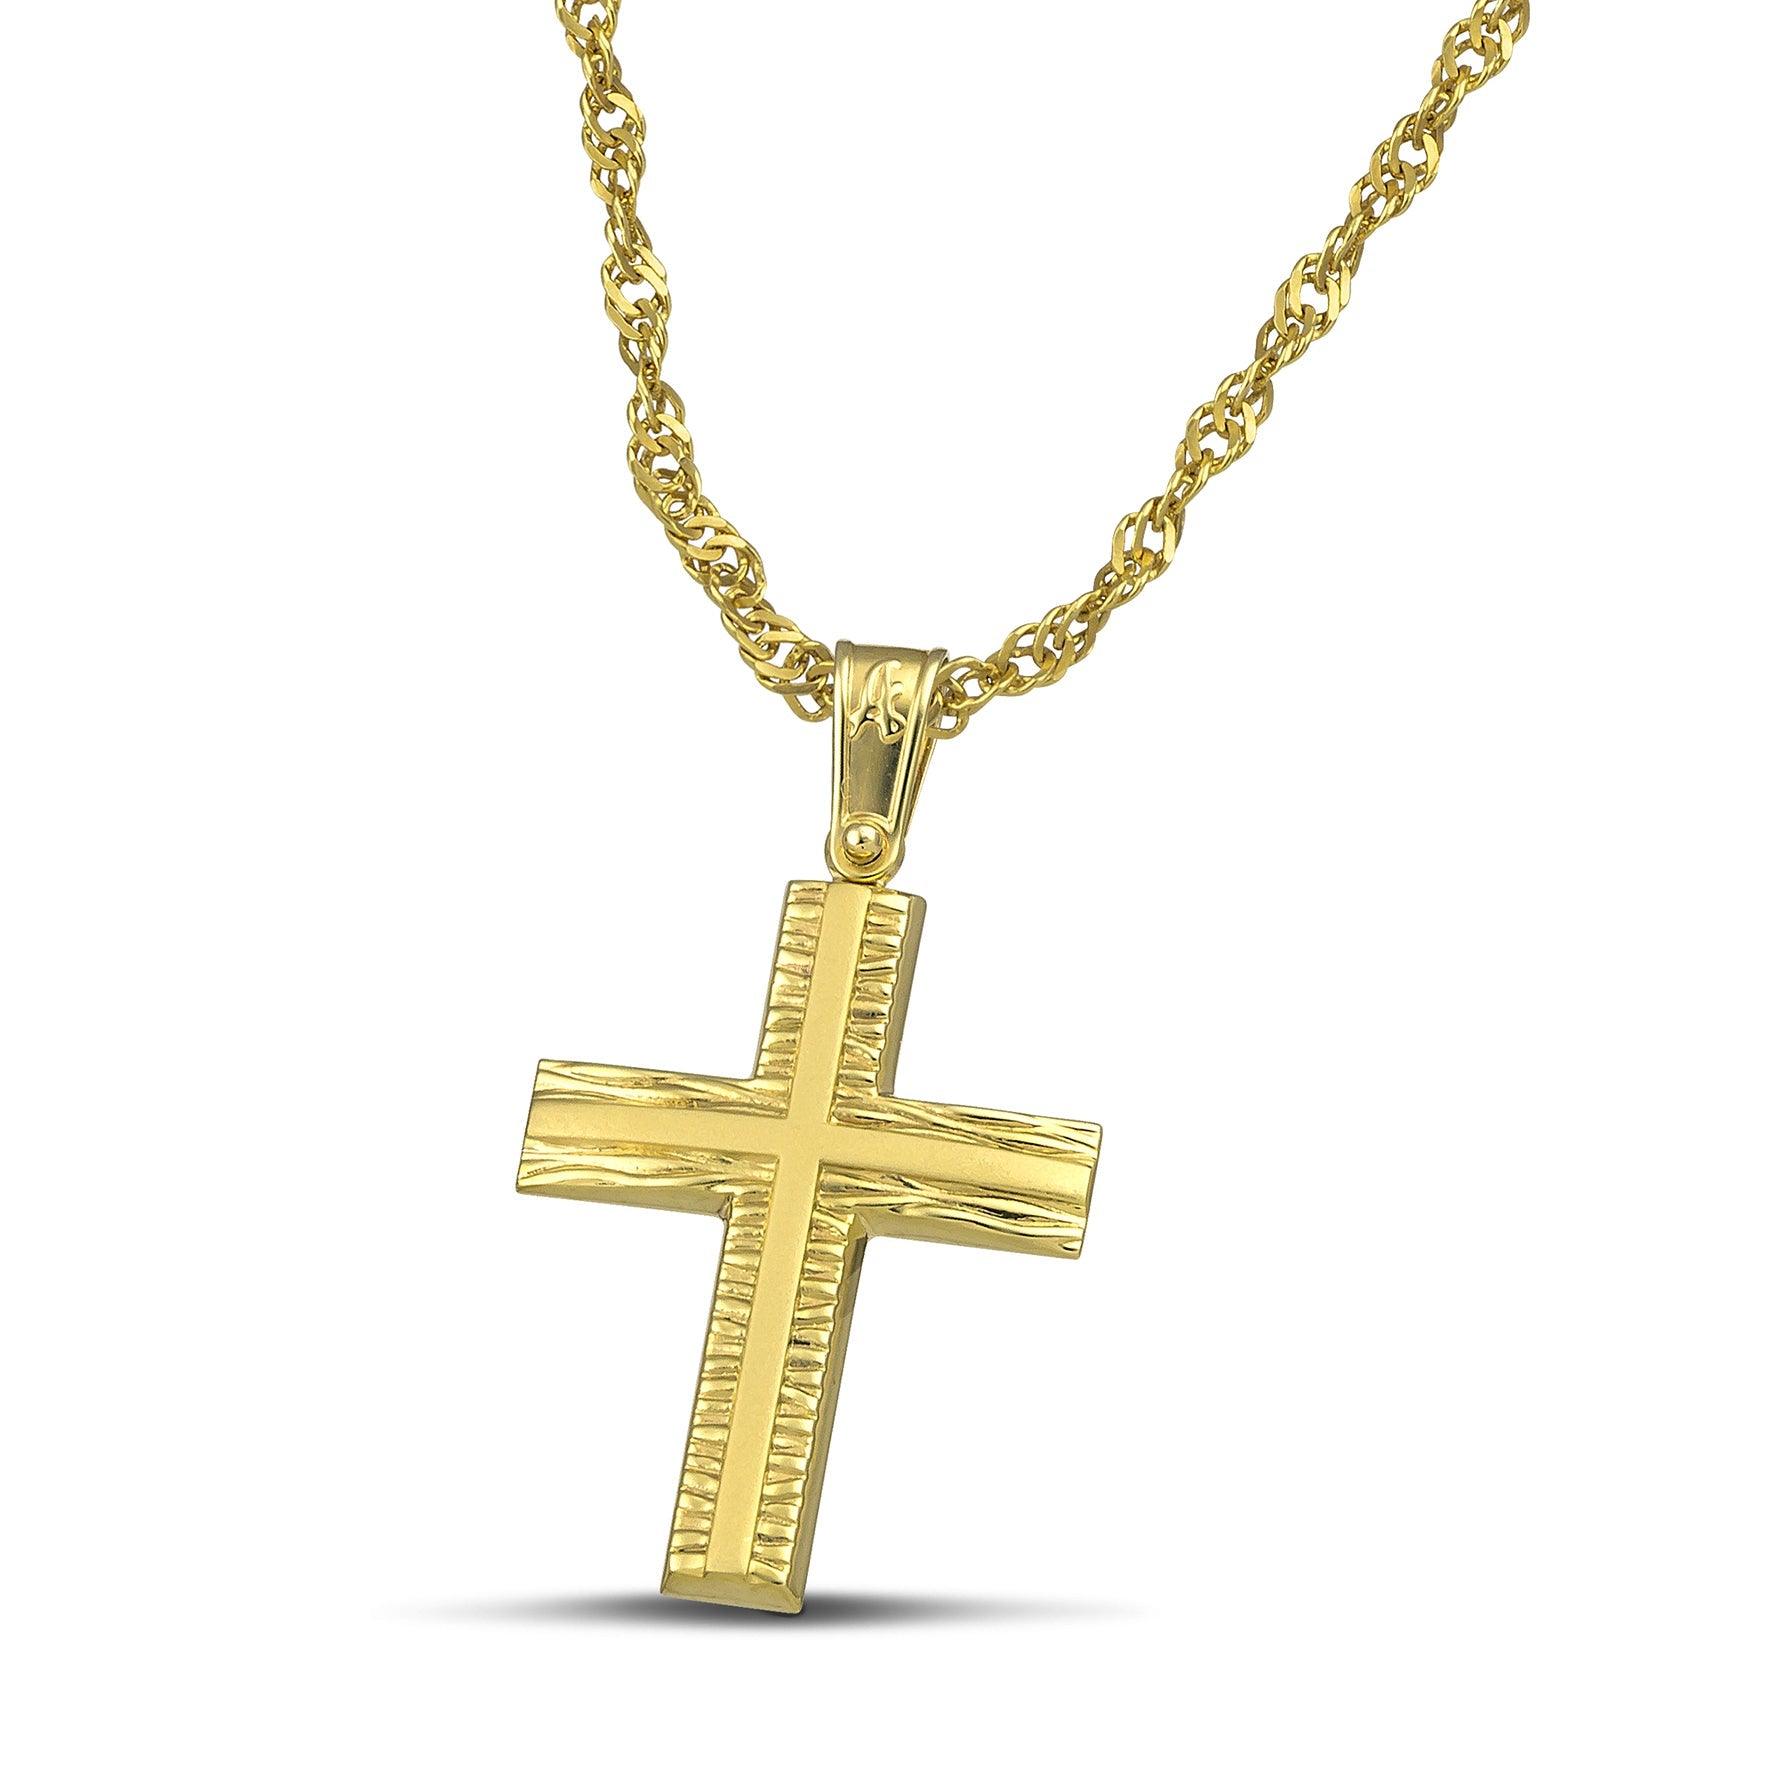 Γυναικείος σταυρός από χρυσό Κ14 με σαγρέ και λουστράτη επιφάνεια. Περασμένος σε πλεκτή αλυσίδα.